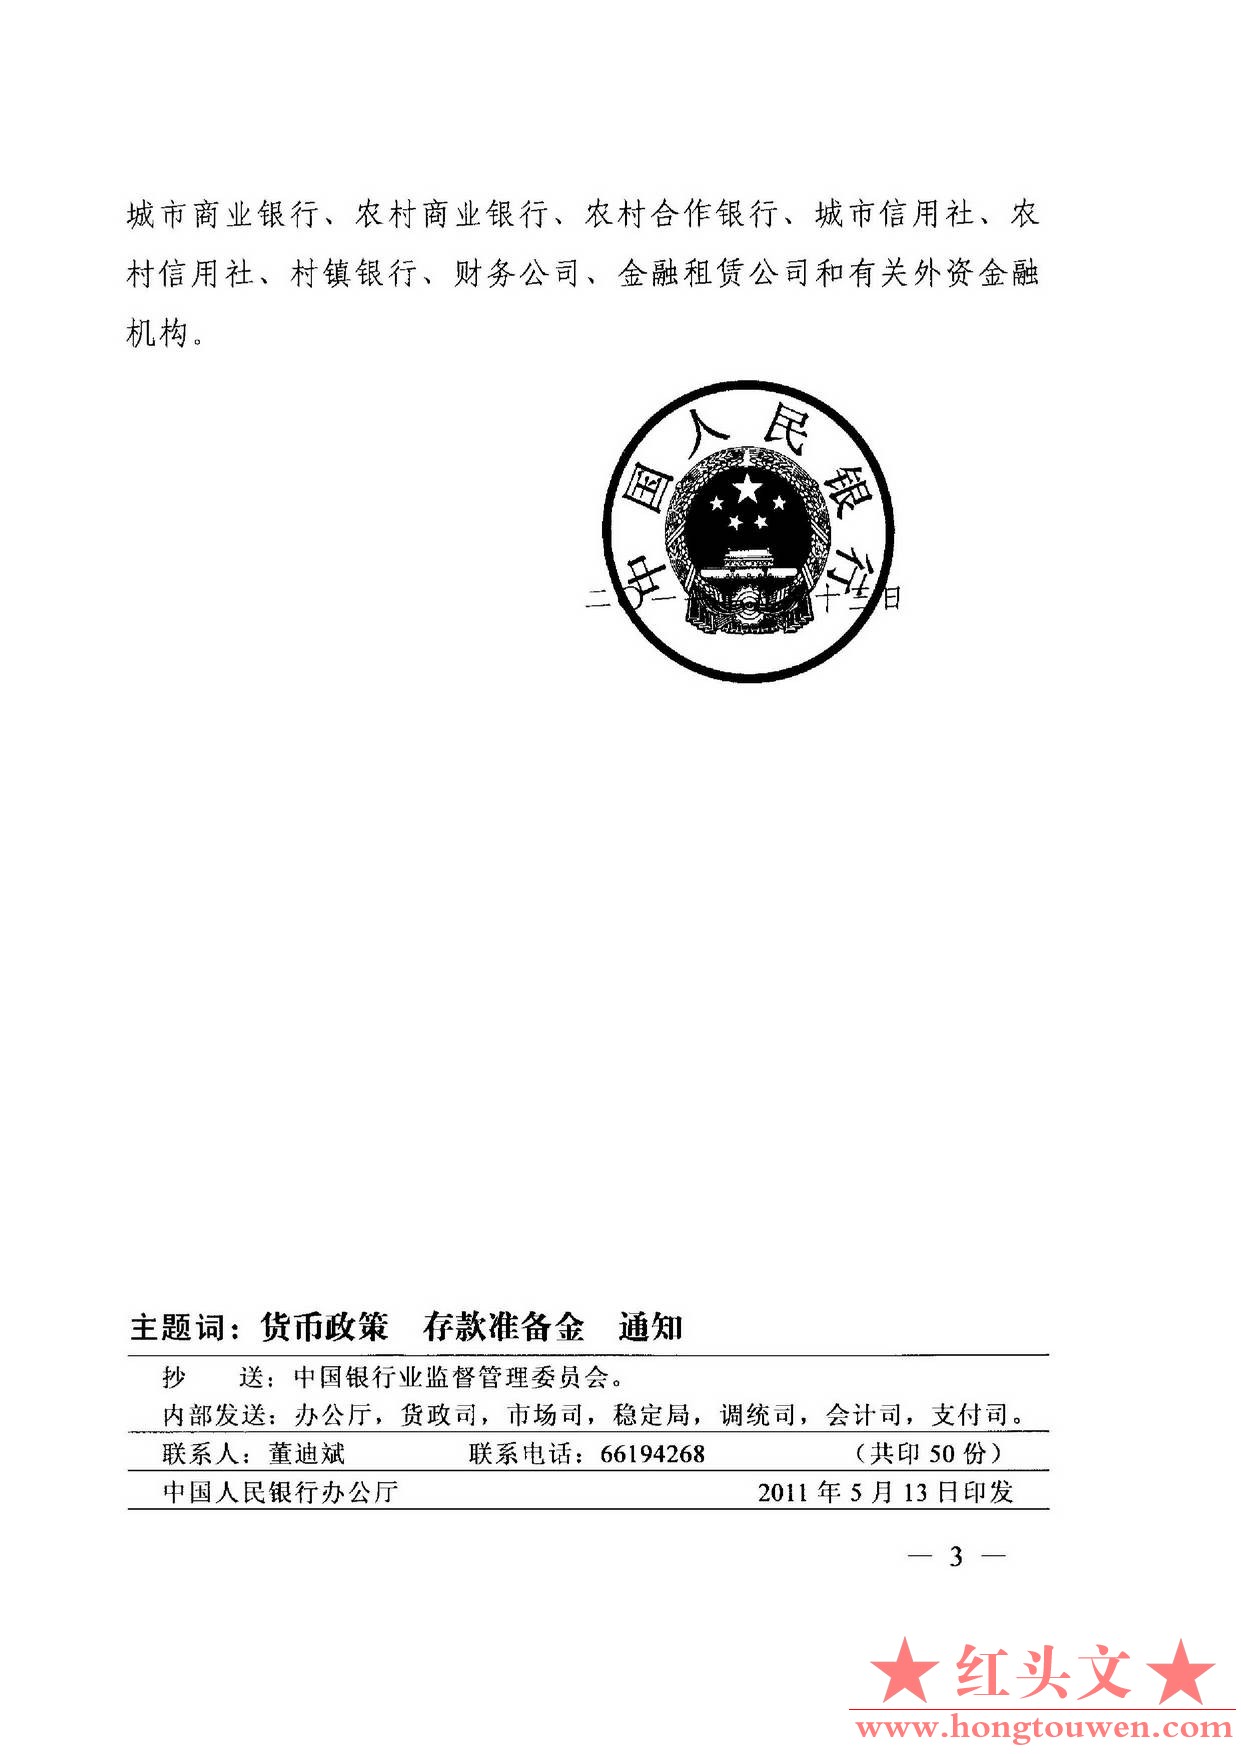 银发[2011]117号-中国人民银行关于上调人民币存款准备金率的通知_页面_3.jpg.jpg